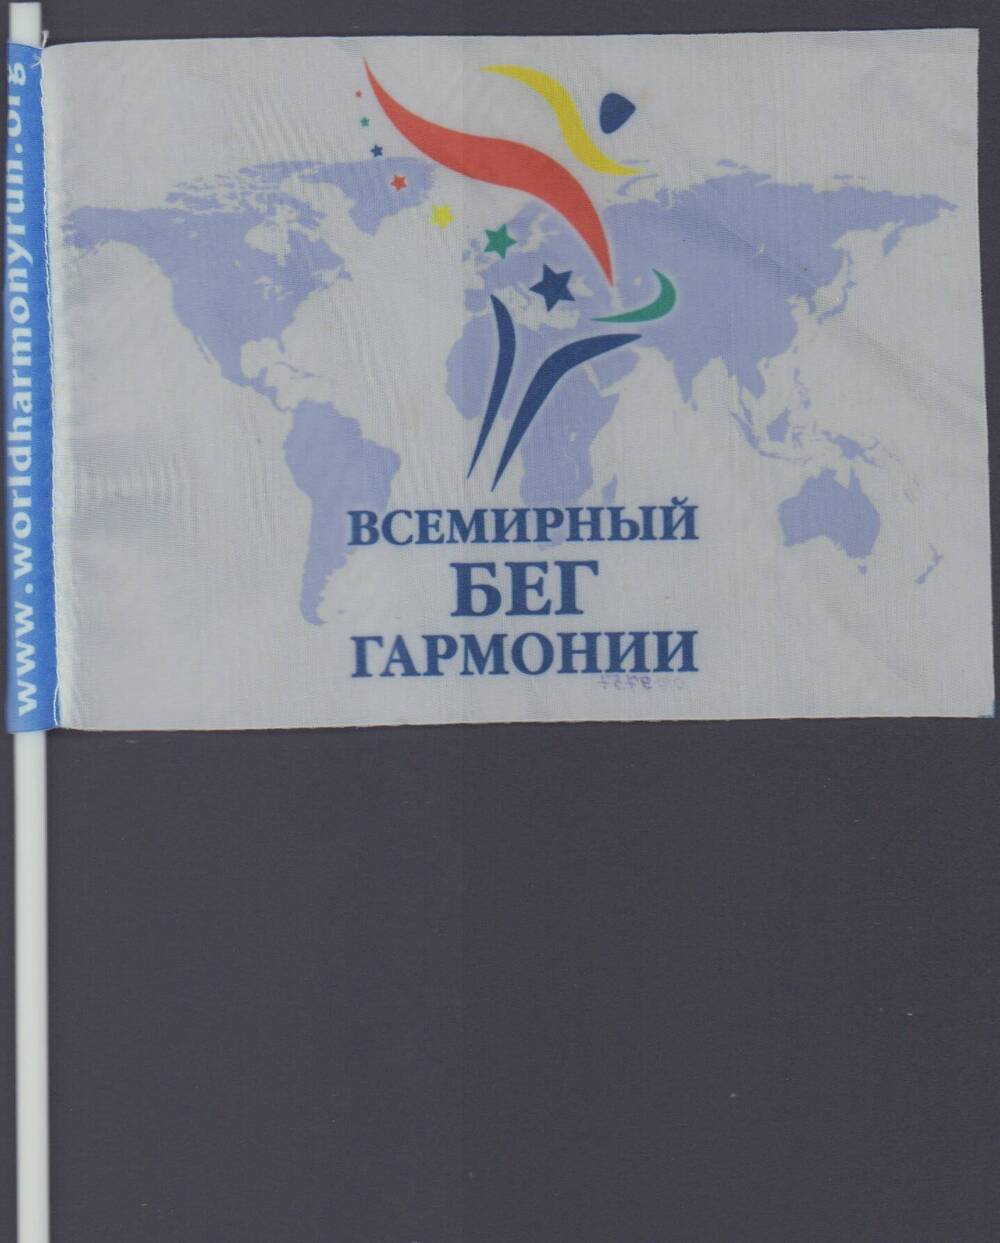 Флажок Всемирный бег гармонии, 2010 г